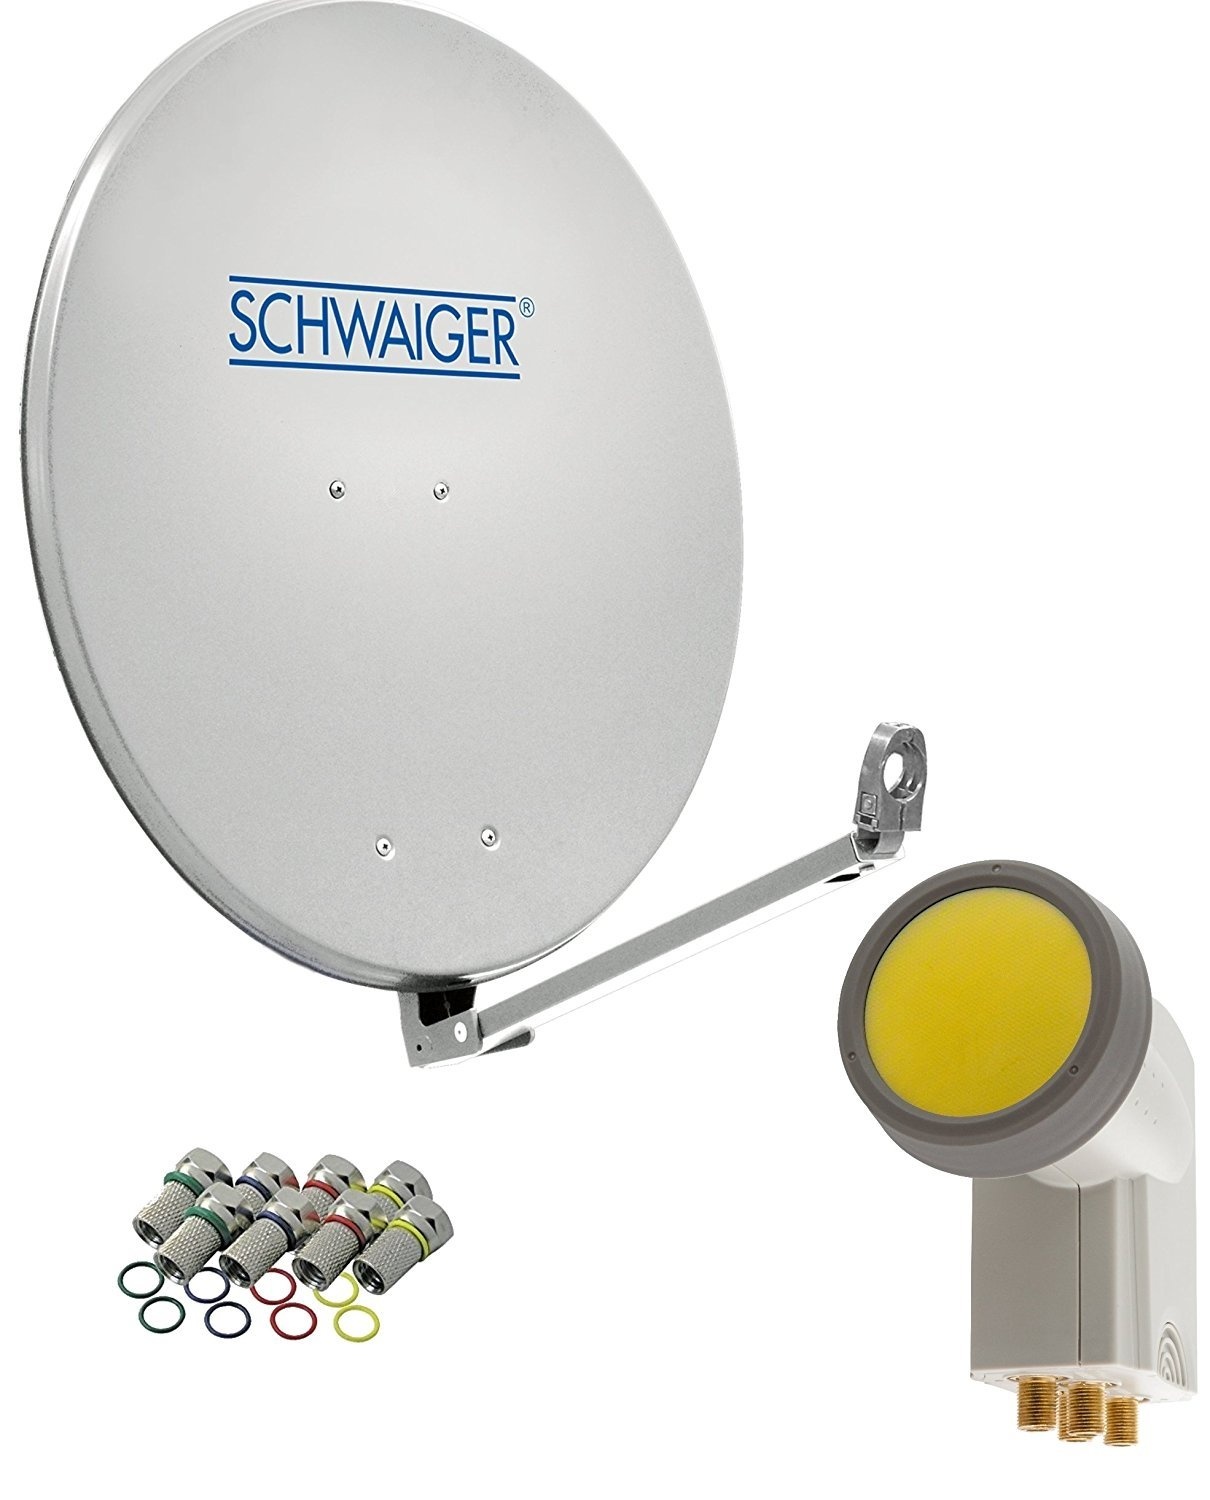 SCHWAIGER 4593 SAT-Anlage Satelliten-Set Satellitenschüssel Quad LNB digital 8X F-Stecker 7mm SAT-Antenne aus Aluminium Komplettset Hellgrau 88 x 88 cm